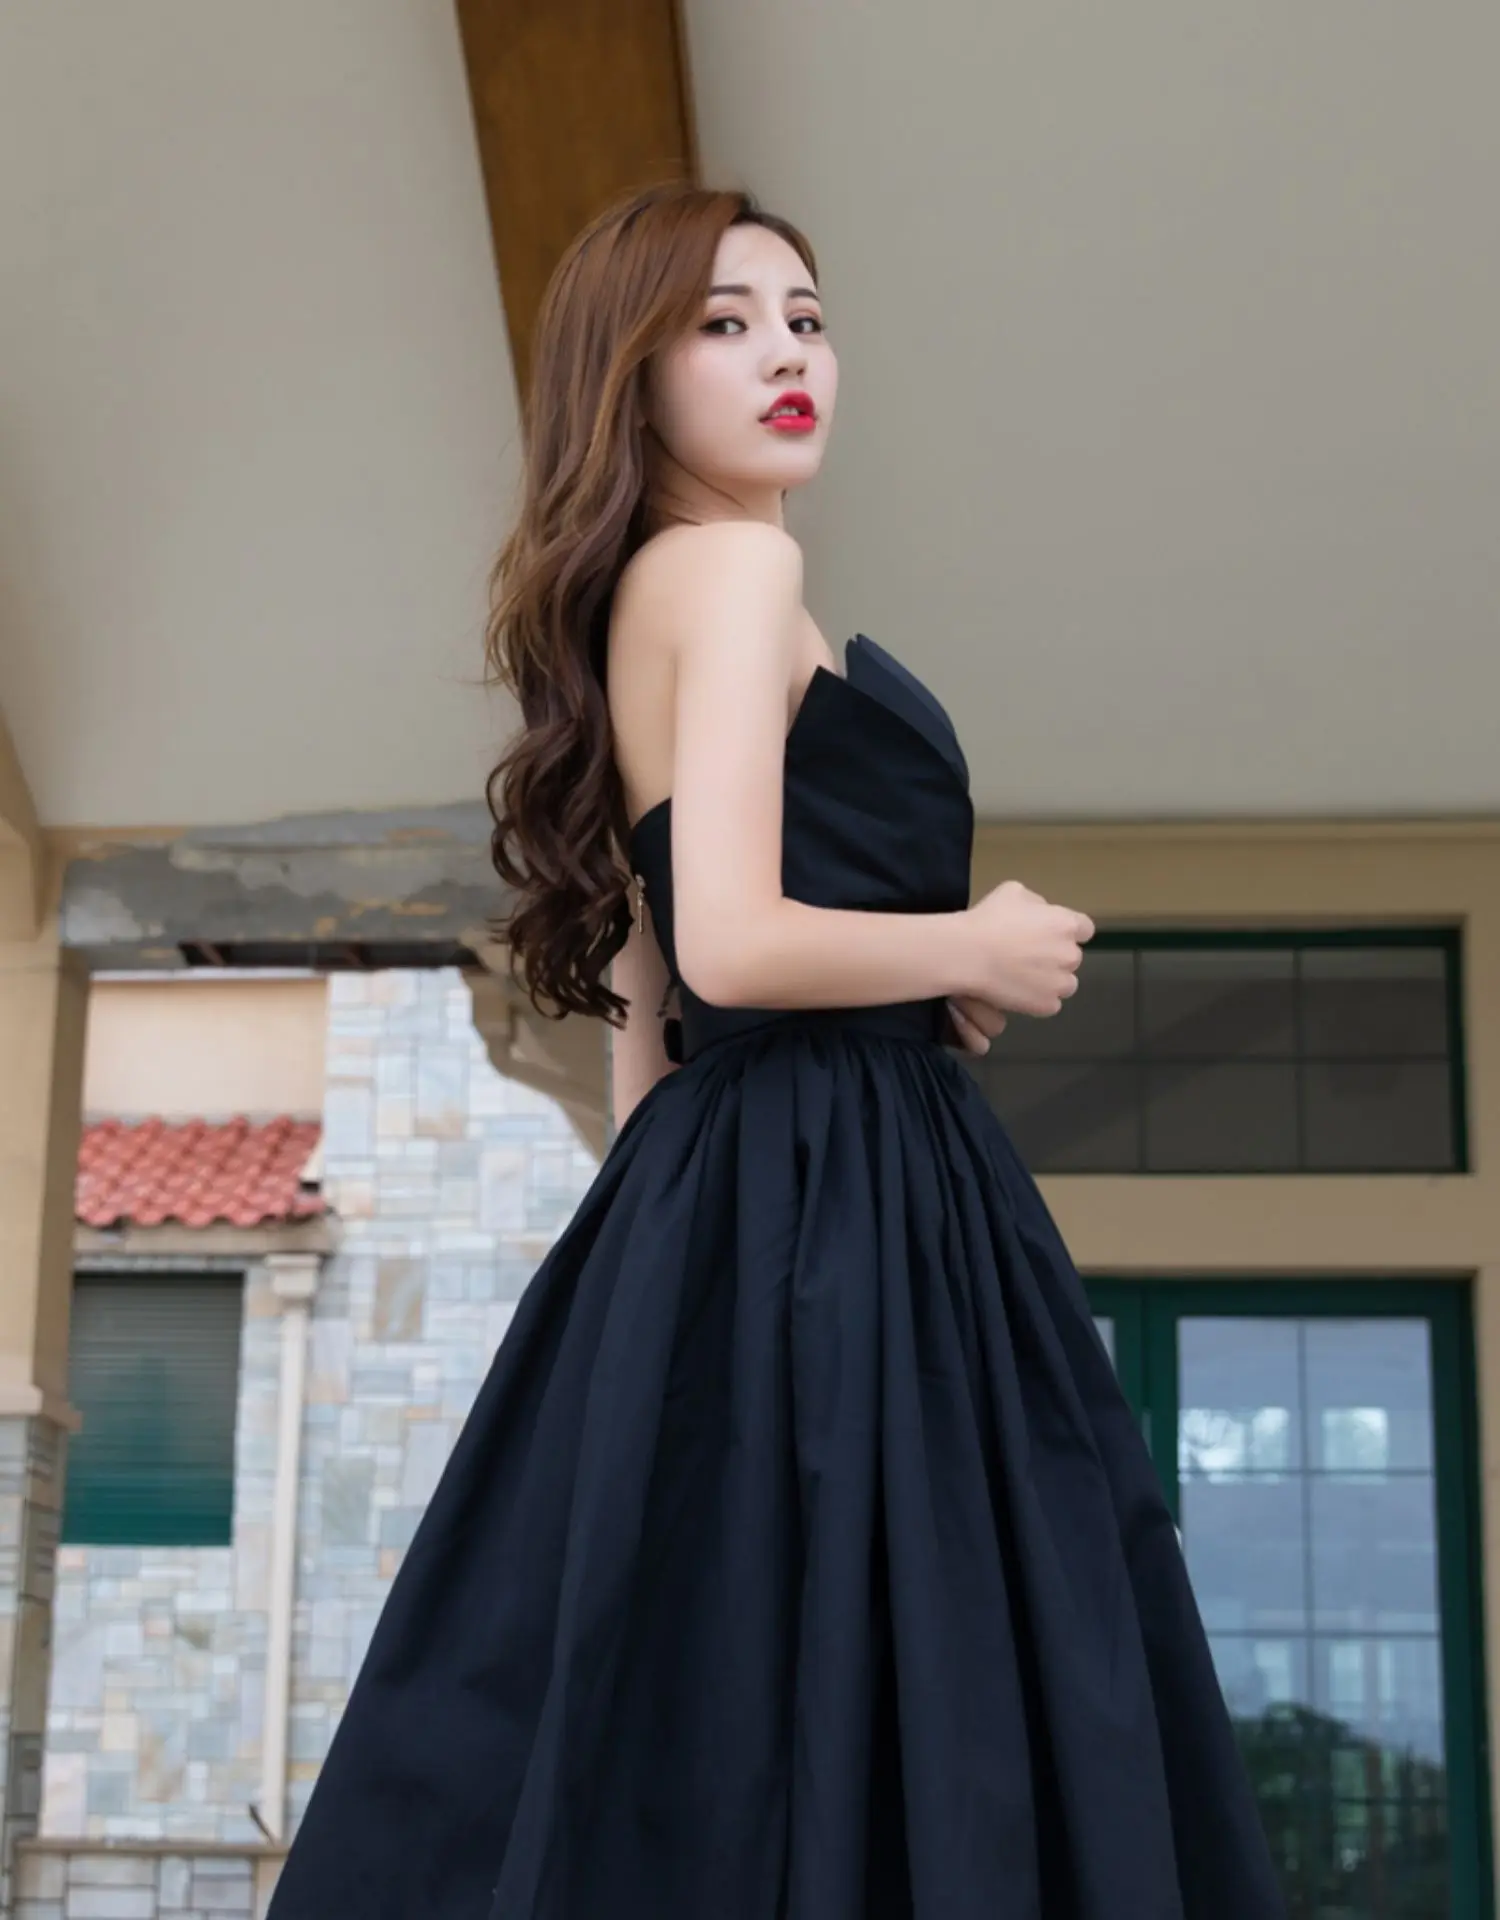 Винтажное черное сексуальное большое свободное платье с открытыми плечами элегантное обтягивающее женское летнее платье с низкой талией